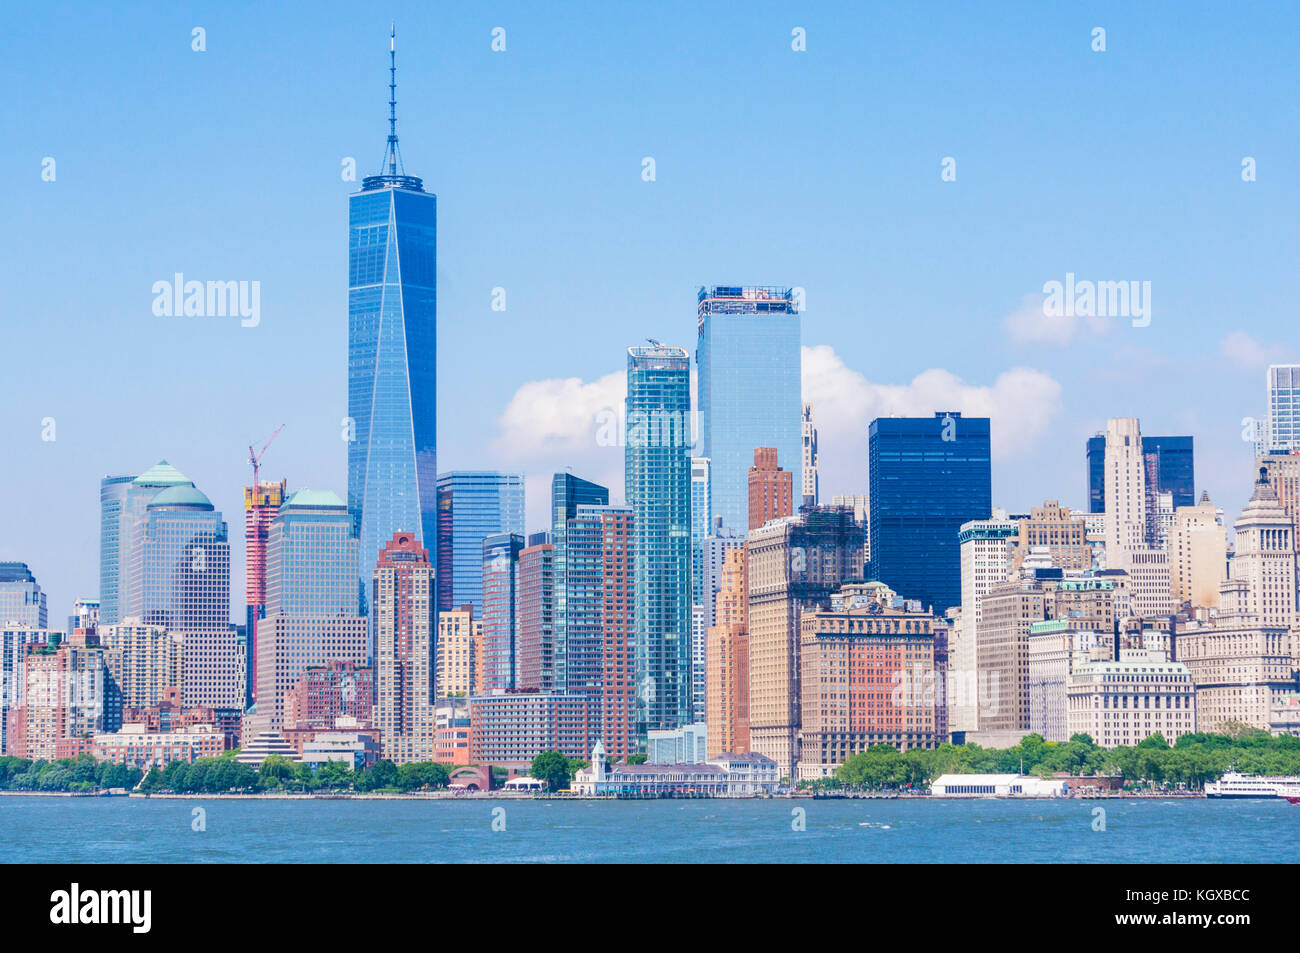 El horizonte de la ciudad de Nueva York Estados Unidos Nueva York Manhattan con rascacielos, incluida la torre de la libertad, la Isla Manhattan cbd NUEVA YORK, EE.UU. Foto de stock